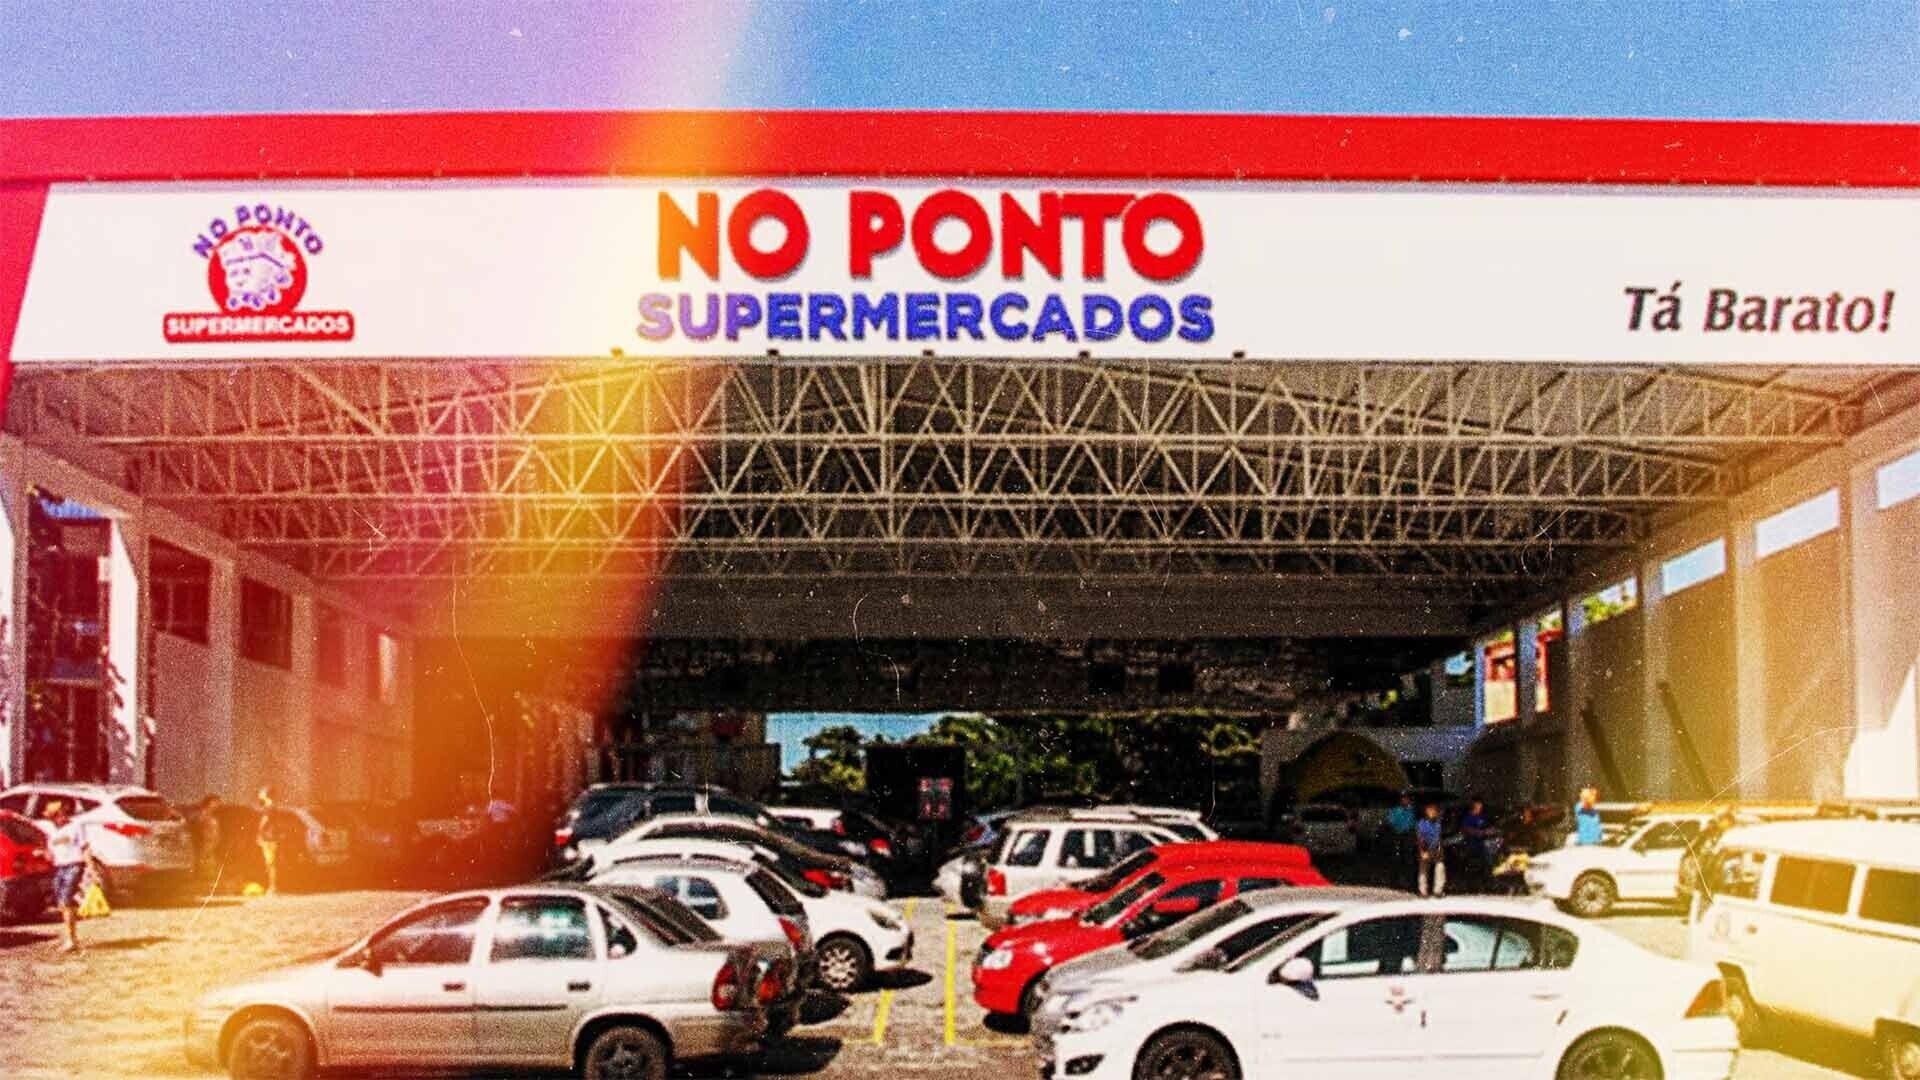 Banner NoPonto Supermercados